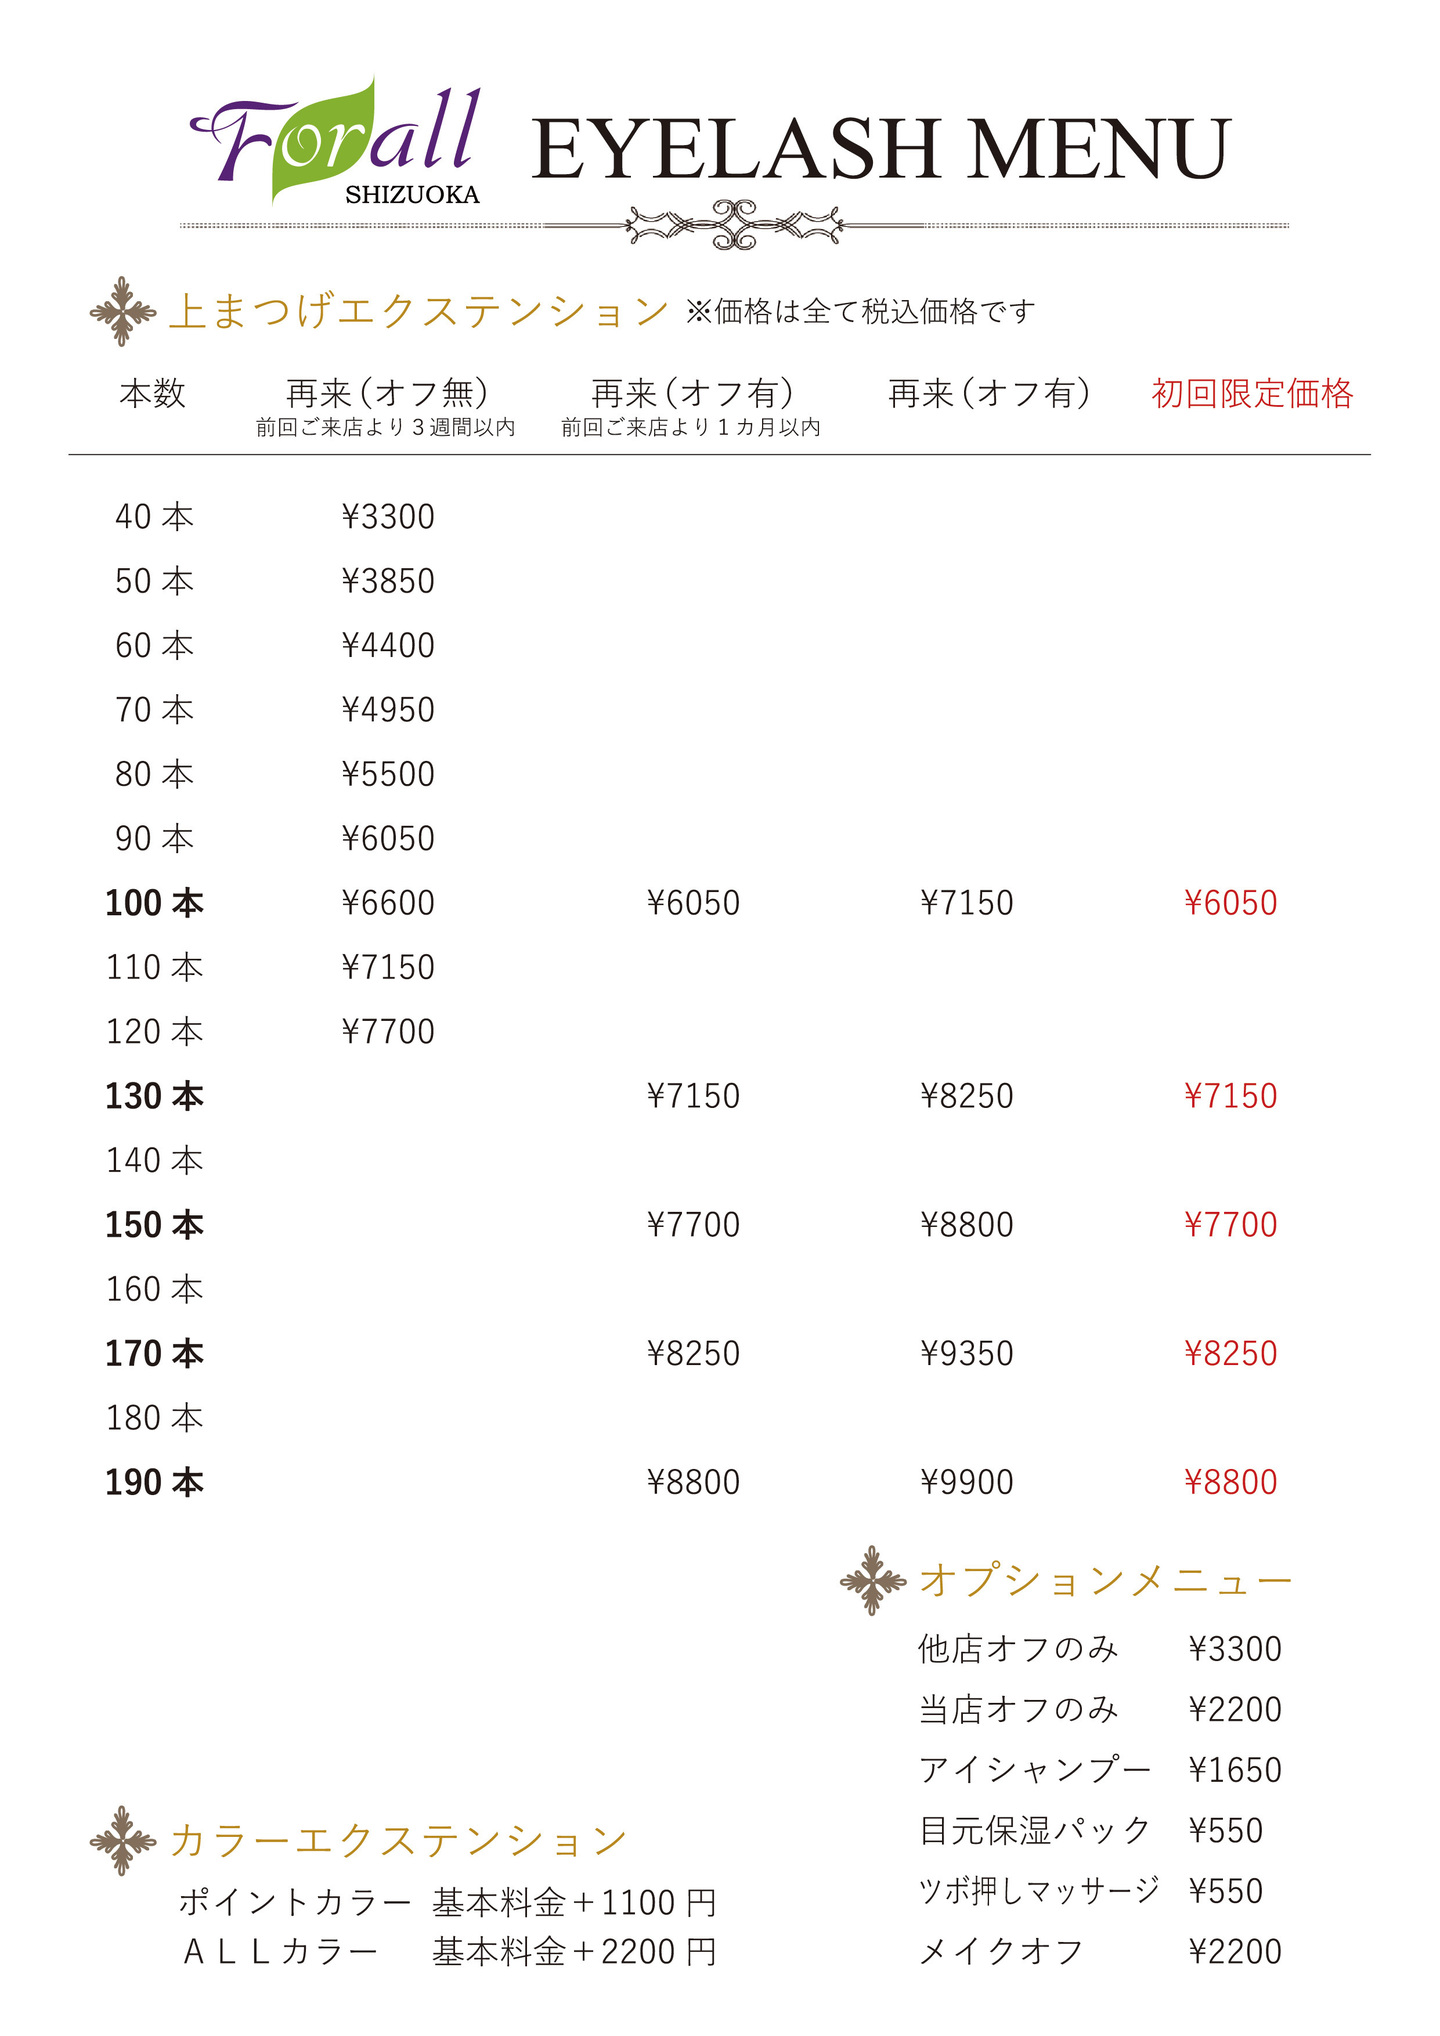 富士市マツエクのフォーラル静岡のまつ毛エクステ料金表の画像1